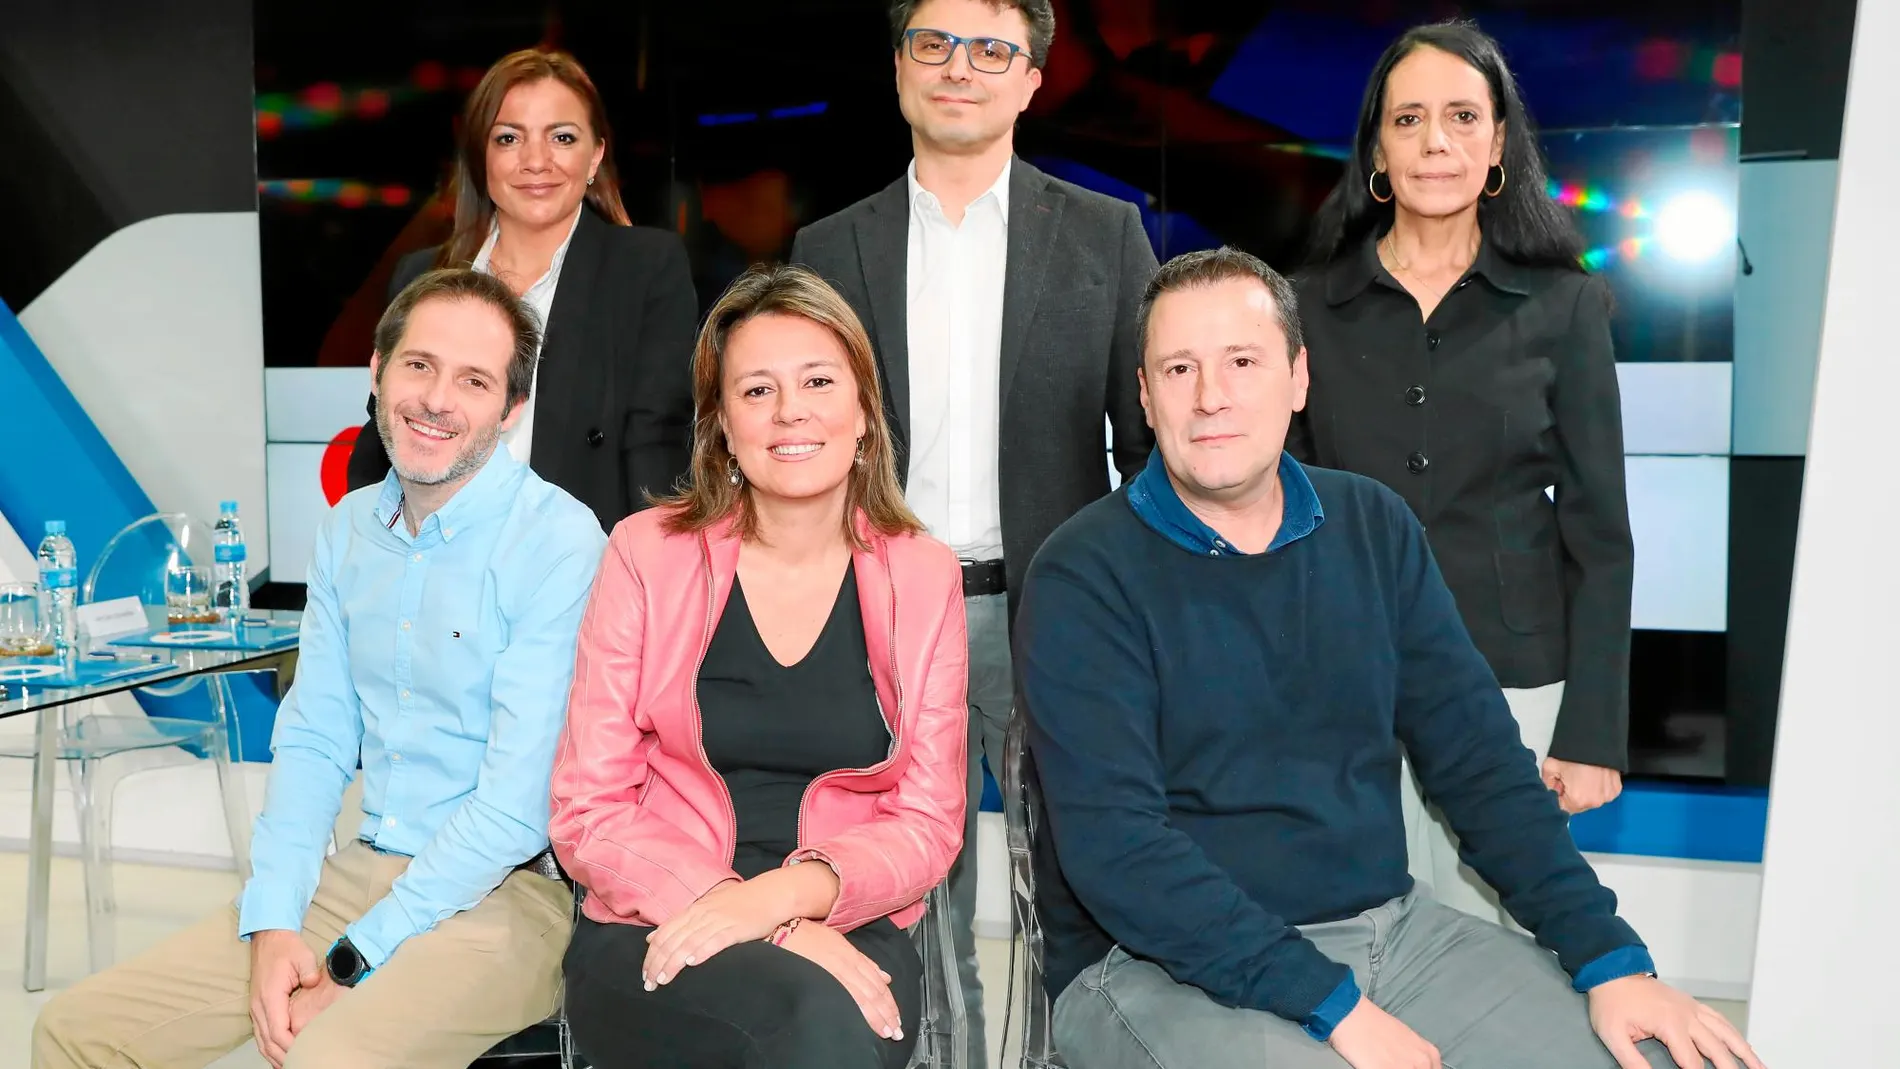 De pie, María Jesús García-Alarilla, David Alonso y Lola González. Sentados, Arturo Cavanna, Belén Gancedo y José Luis Fernández